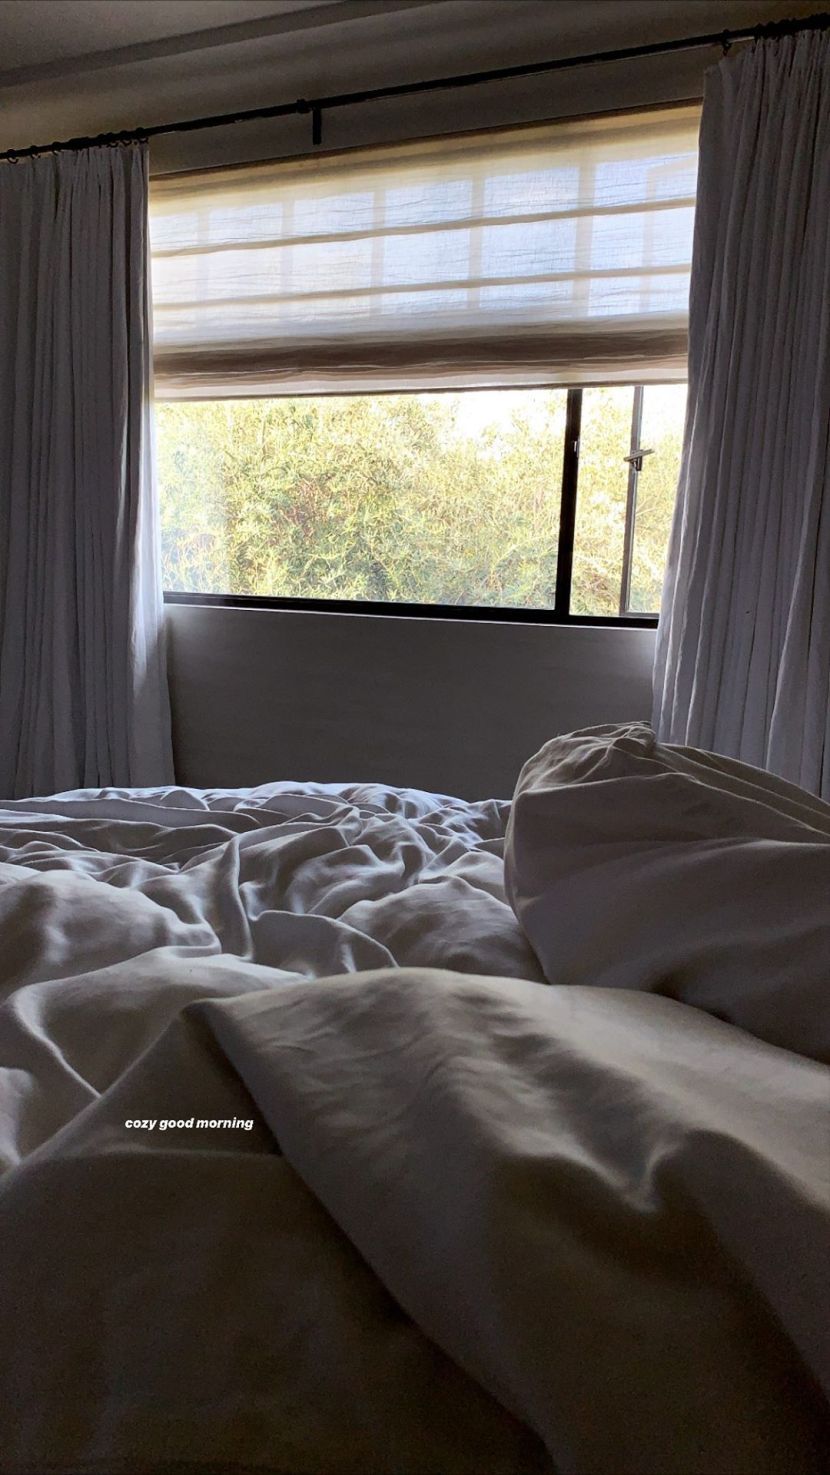 Kourtney Kardashian's Bedroom Is So 'Cozy': 'Not Leaving'